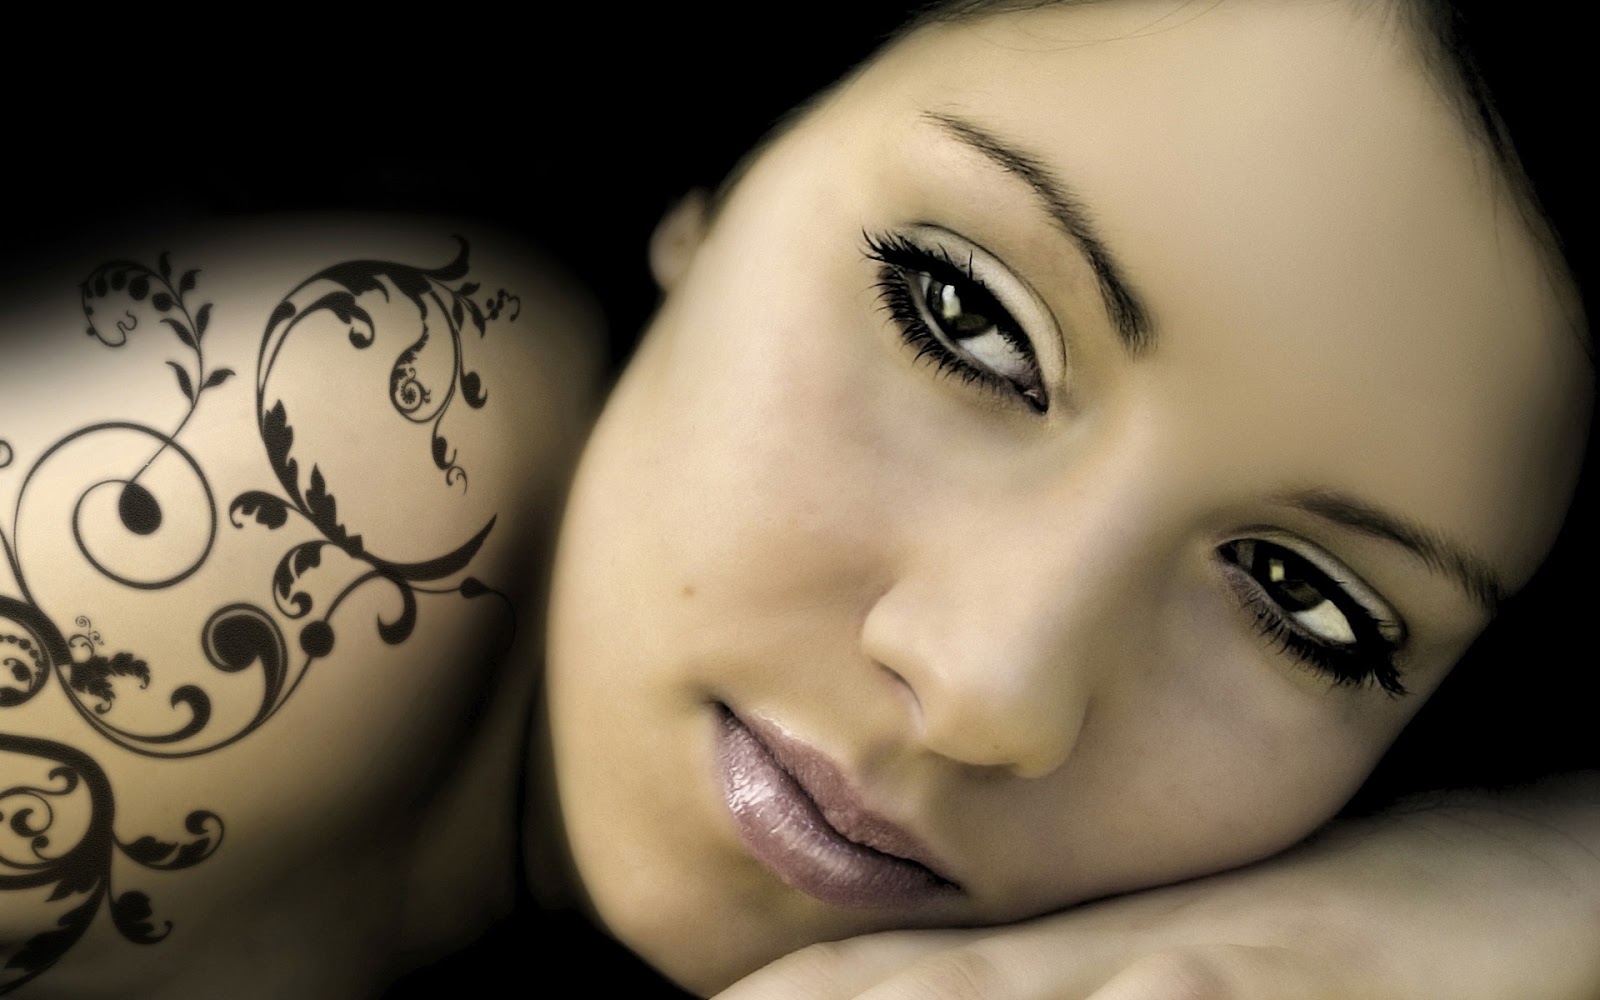 ... women 5 tattoos for women tattoos for women tattoos for women tattoos